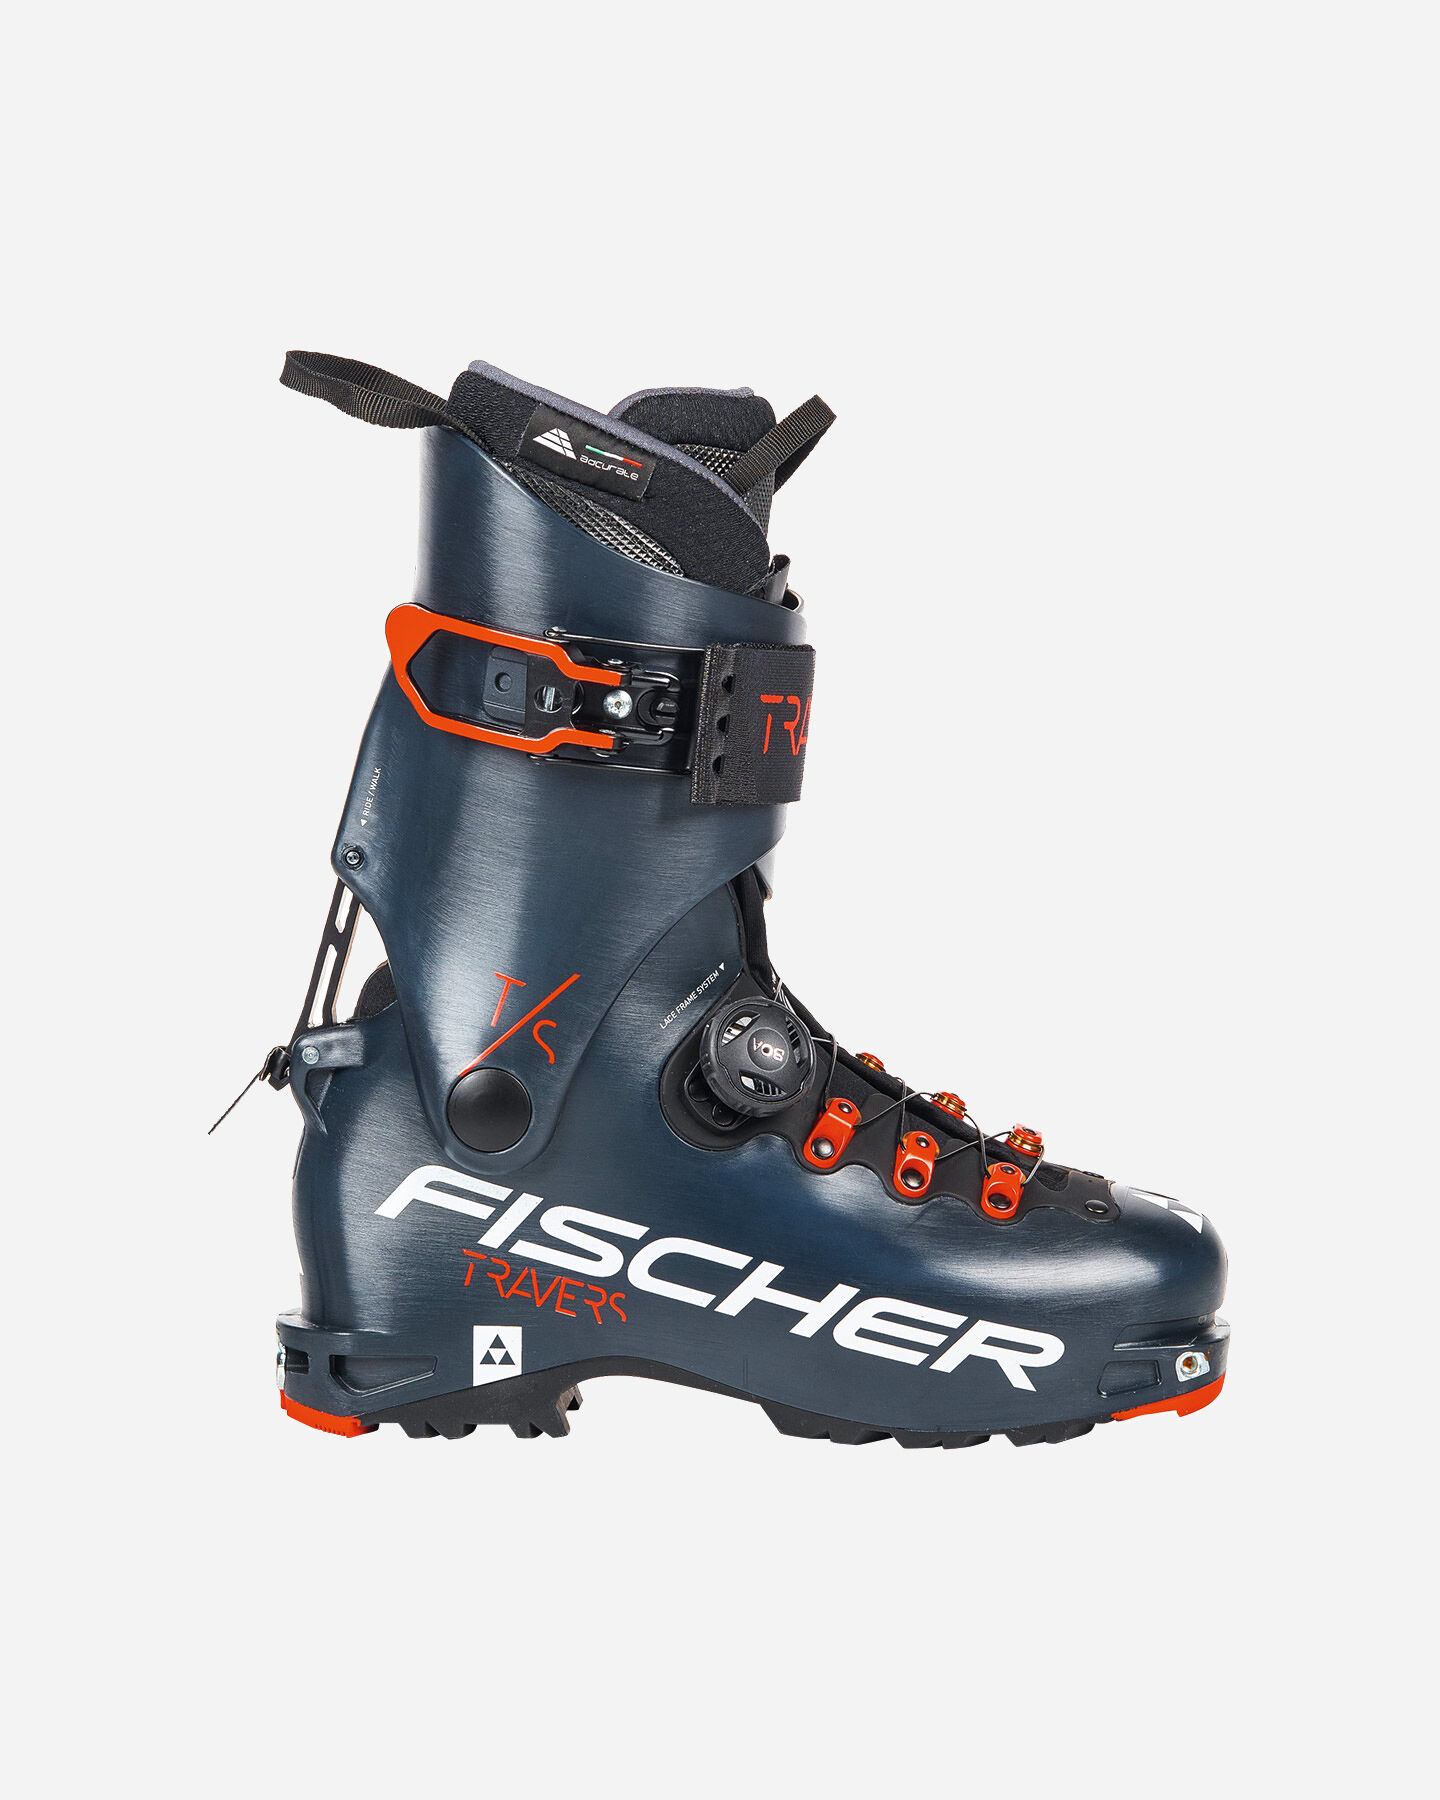  Scarponi sci alpinismo FISCHER TRAVERS TS S4092535|1|30,5 scatto 0